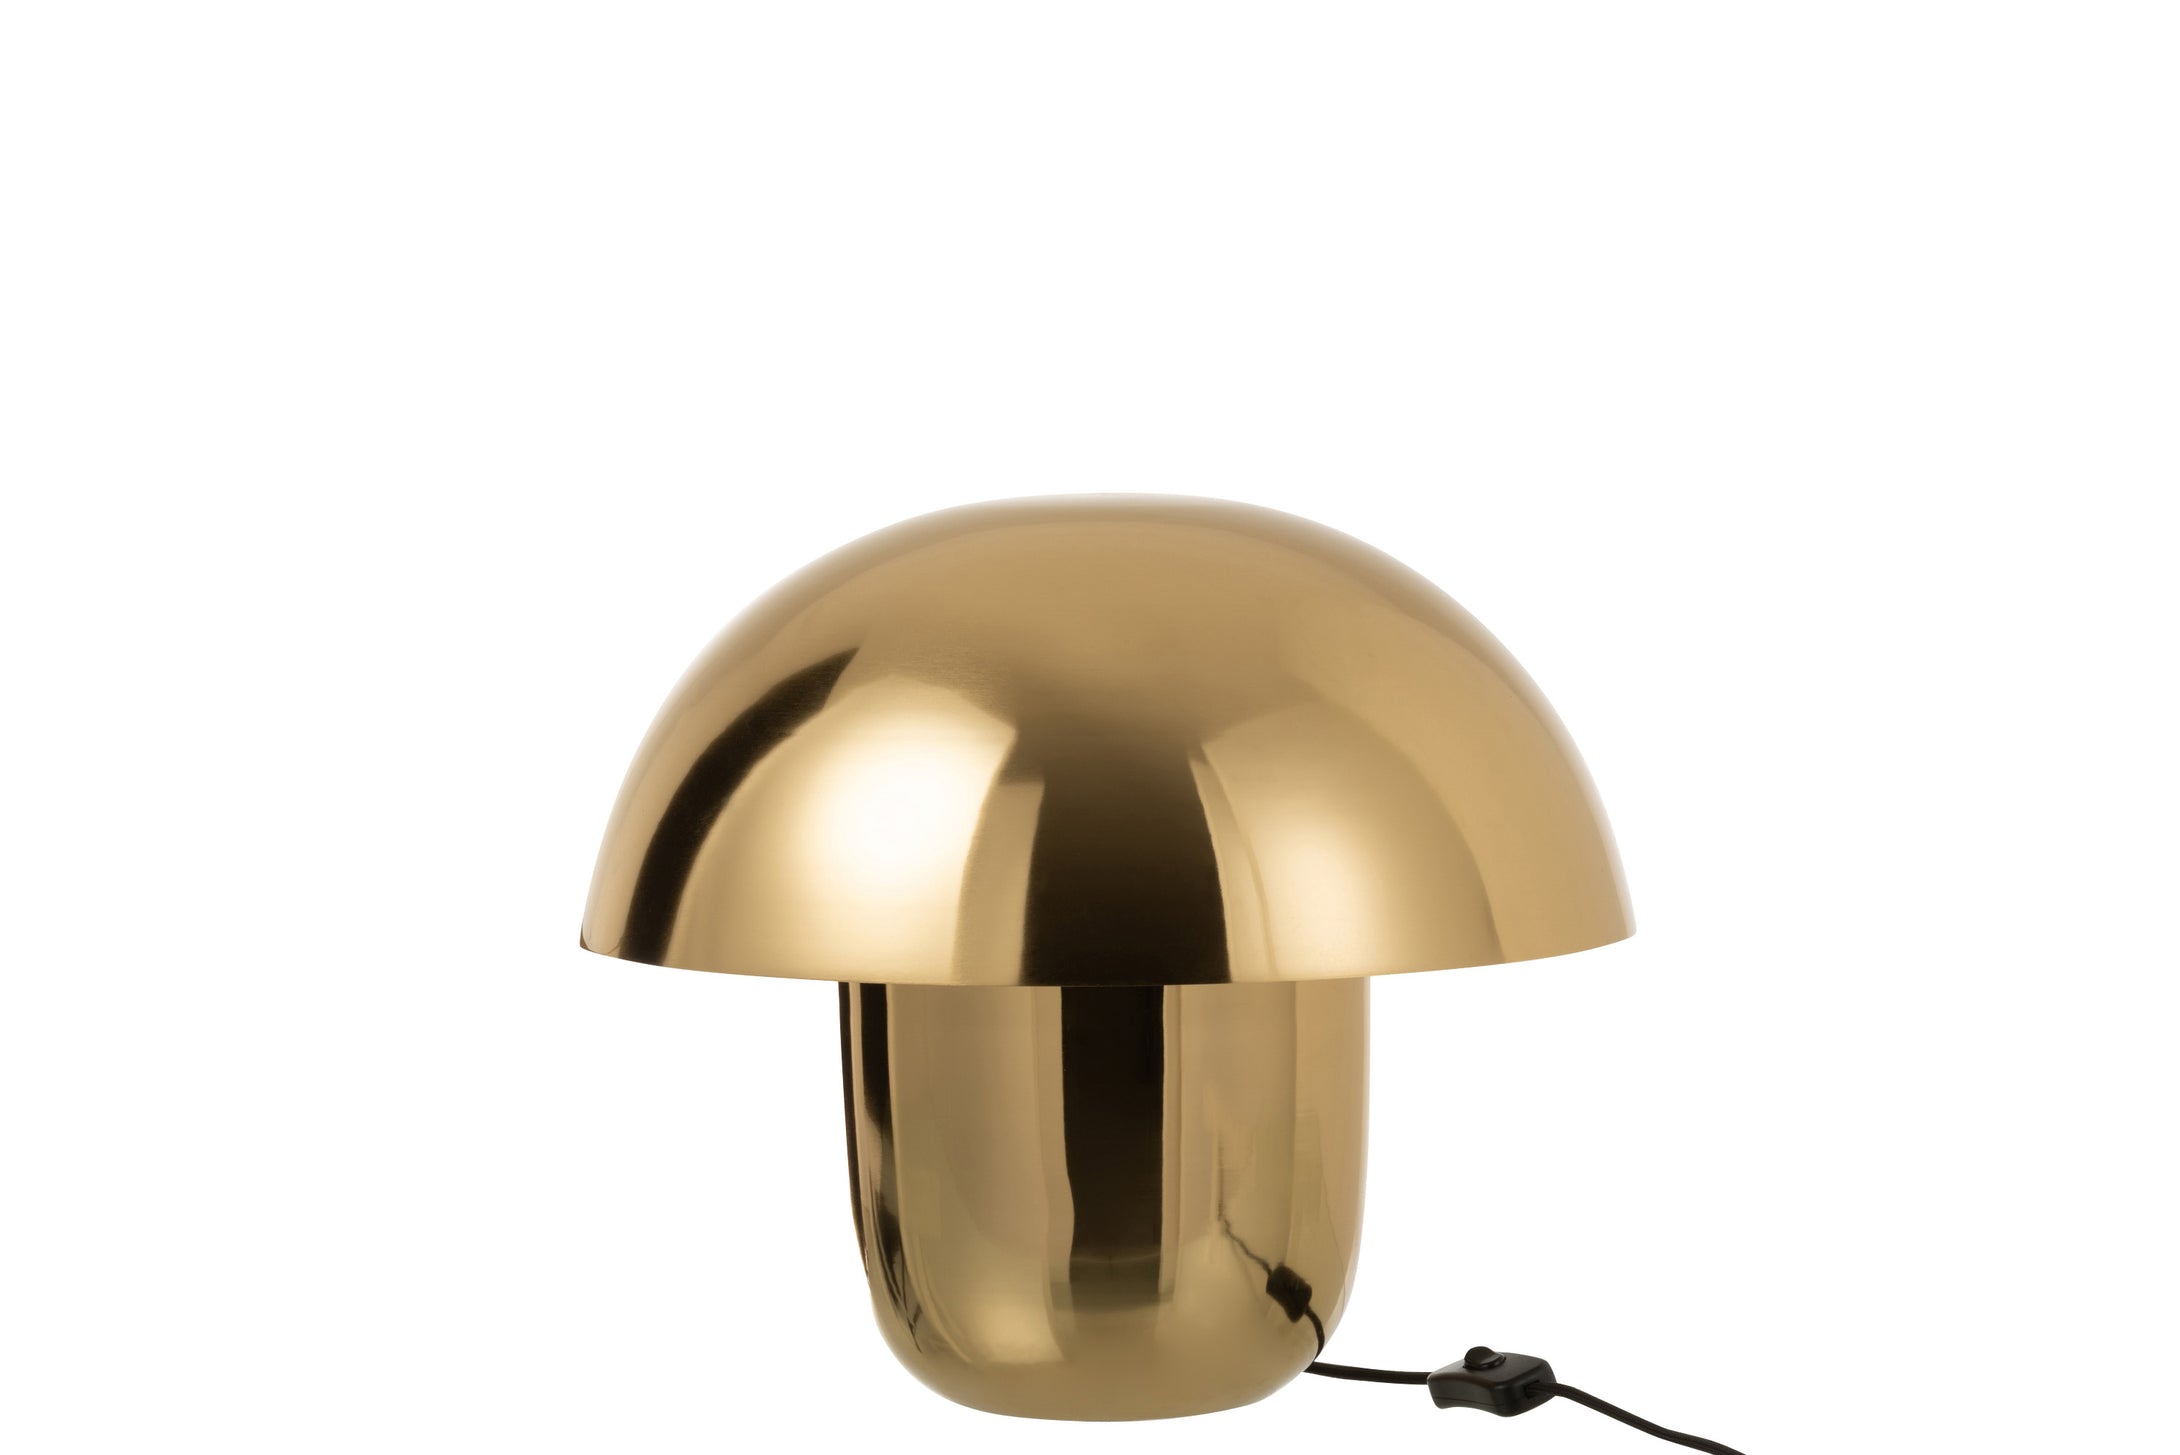 Tischlampe in Form eines Pilzes, aus glänzendem goldfarbenem Metall, vom Design an einen Steinpilz erinnernd. 